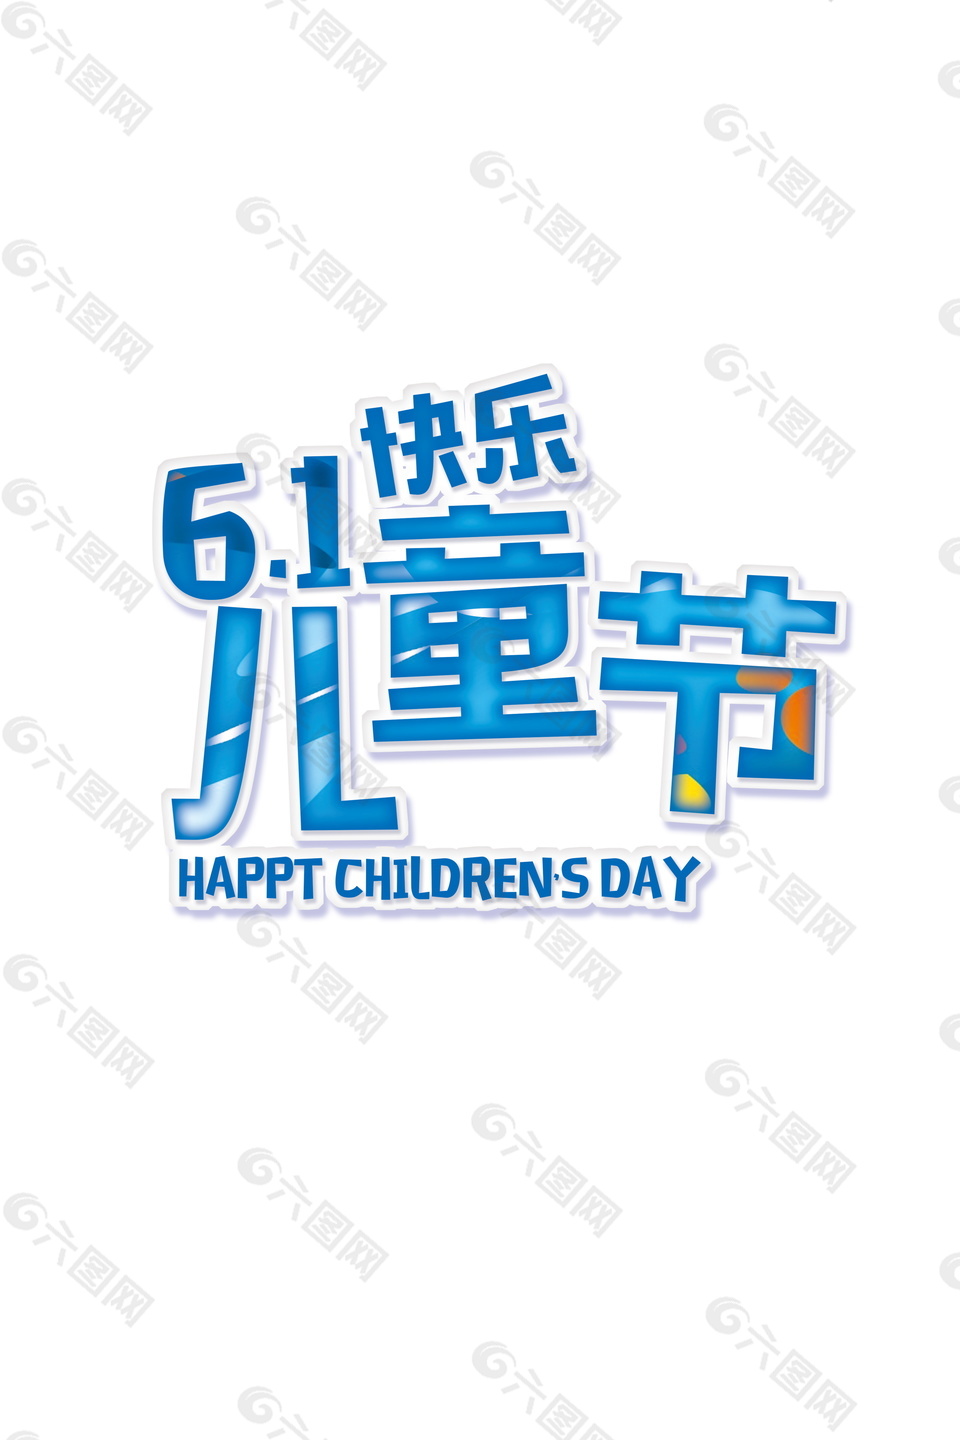 61儿童节快乐字体装饰元素设计